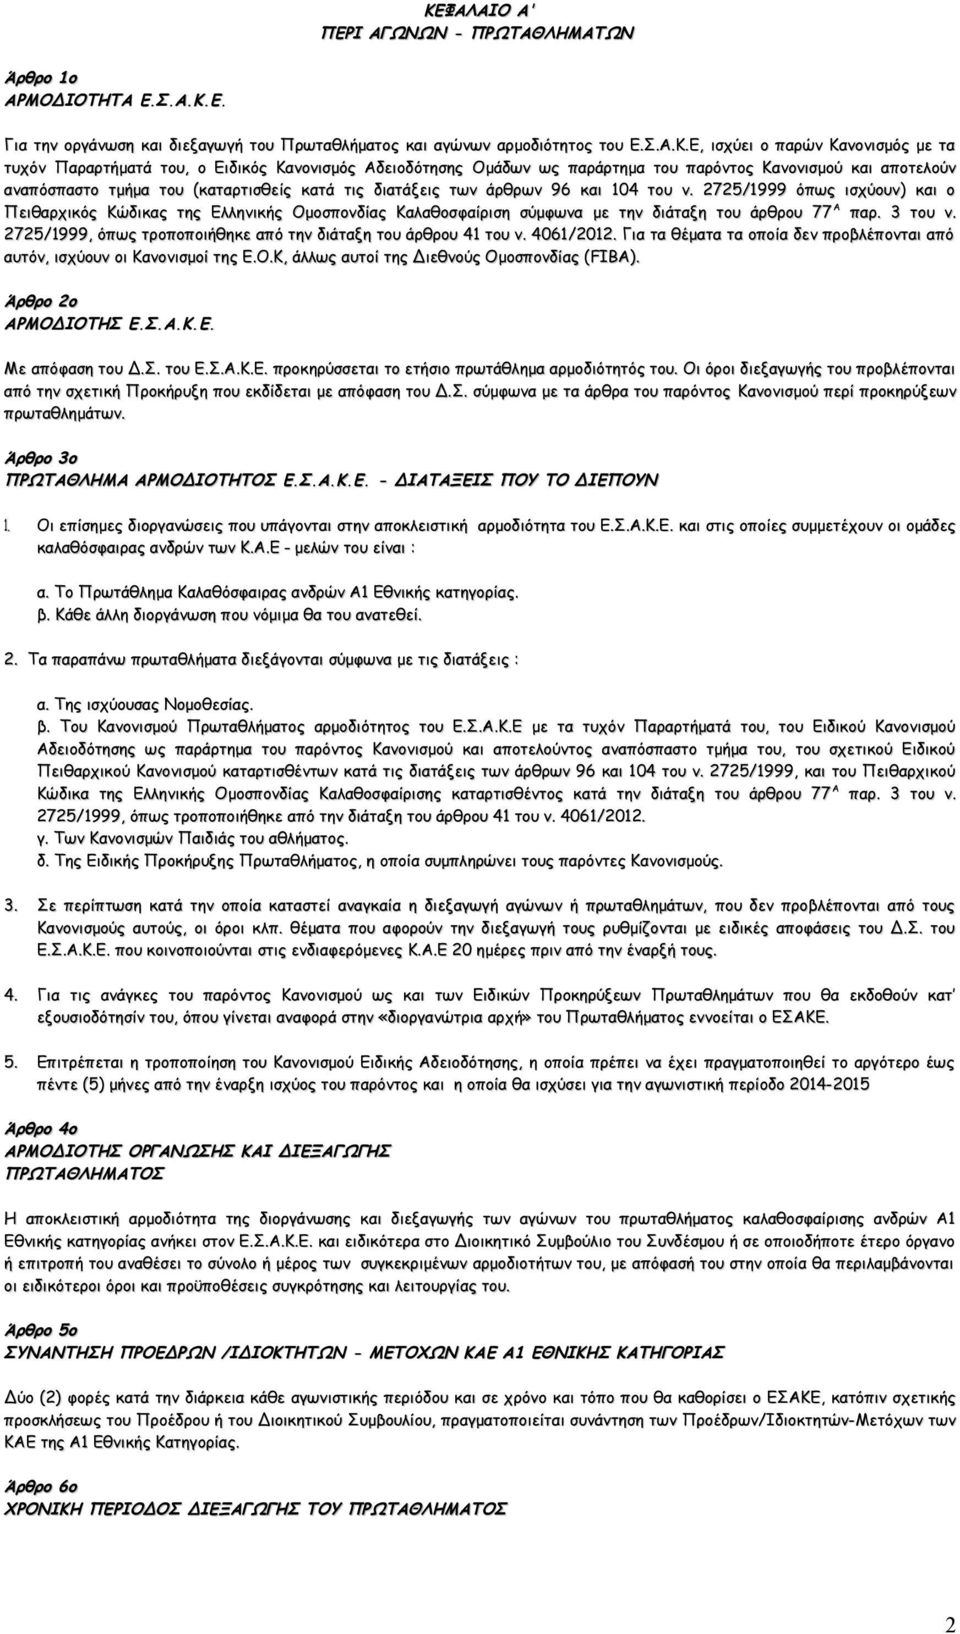 2725/1999 όπως ισχύουν) και ο Πειθαρχικός Κώδικας της Ελληνικής Ομοσπονδίας Καλαθοσφαίριση σύμφωνα με την διάταξη του άρθρου 77 Α παρ. 3 του ν.